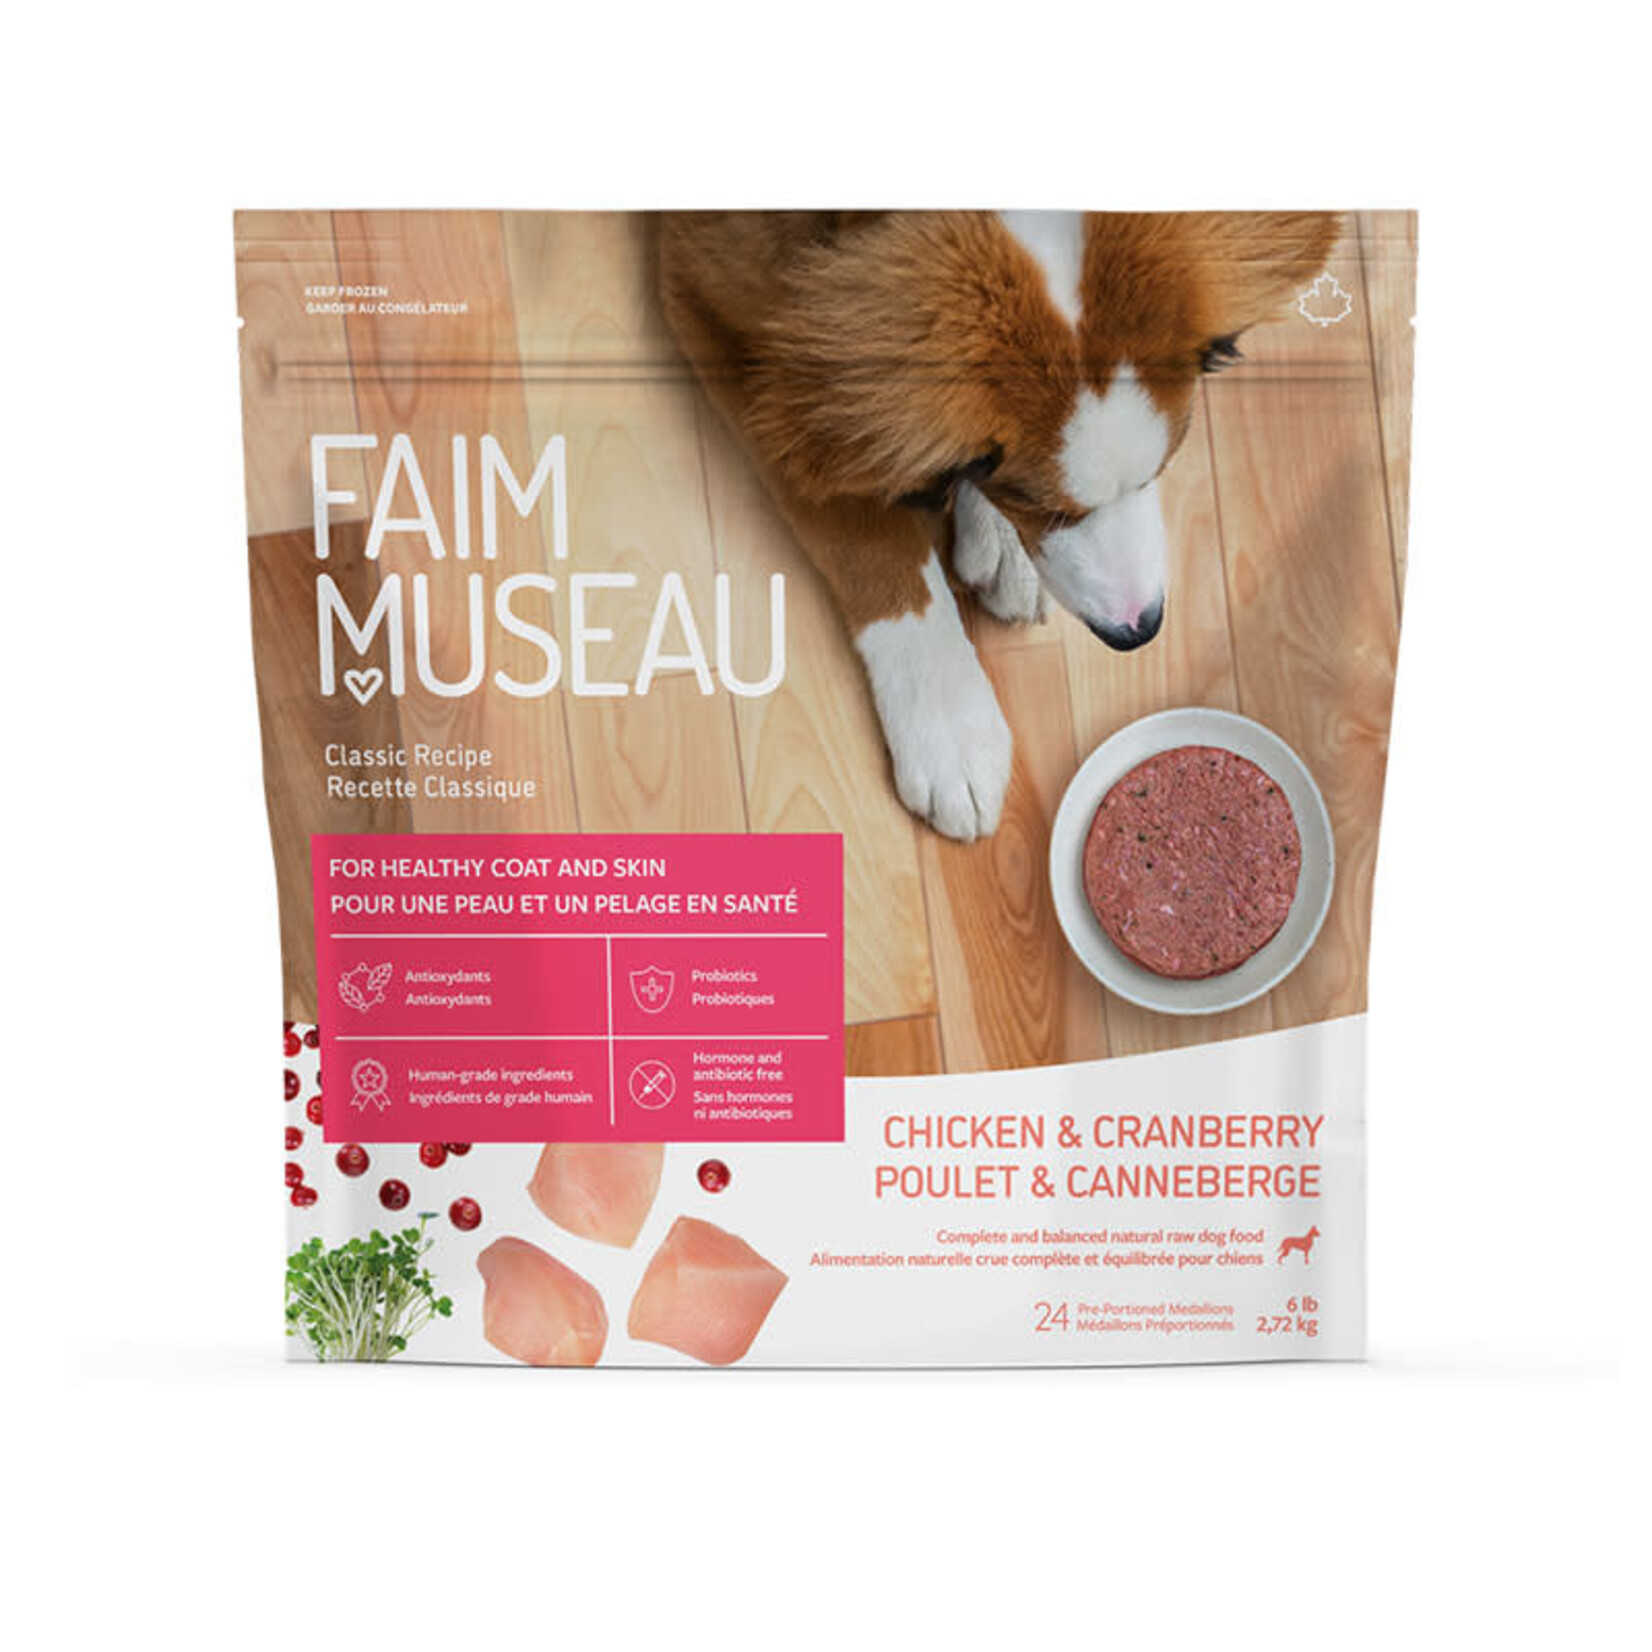 Faim Museau Faim Museau - Poulet & Canneberges pour chiens - 6lb